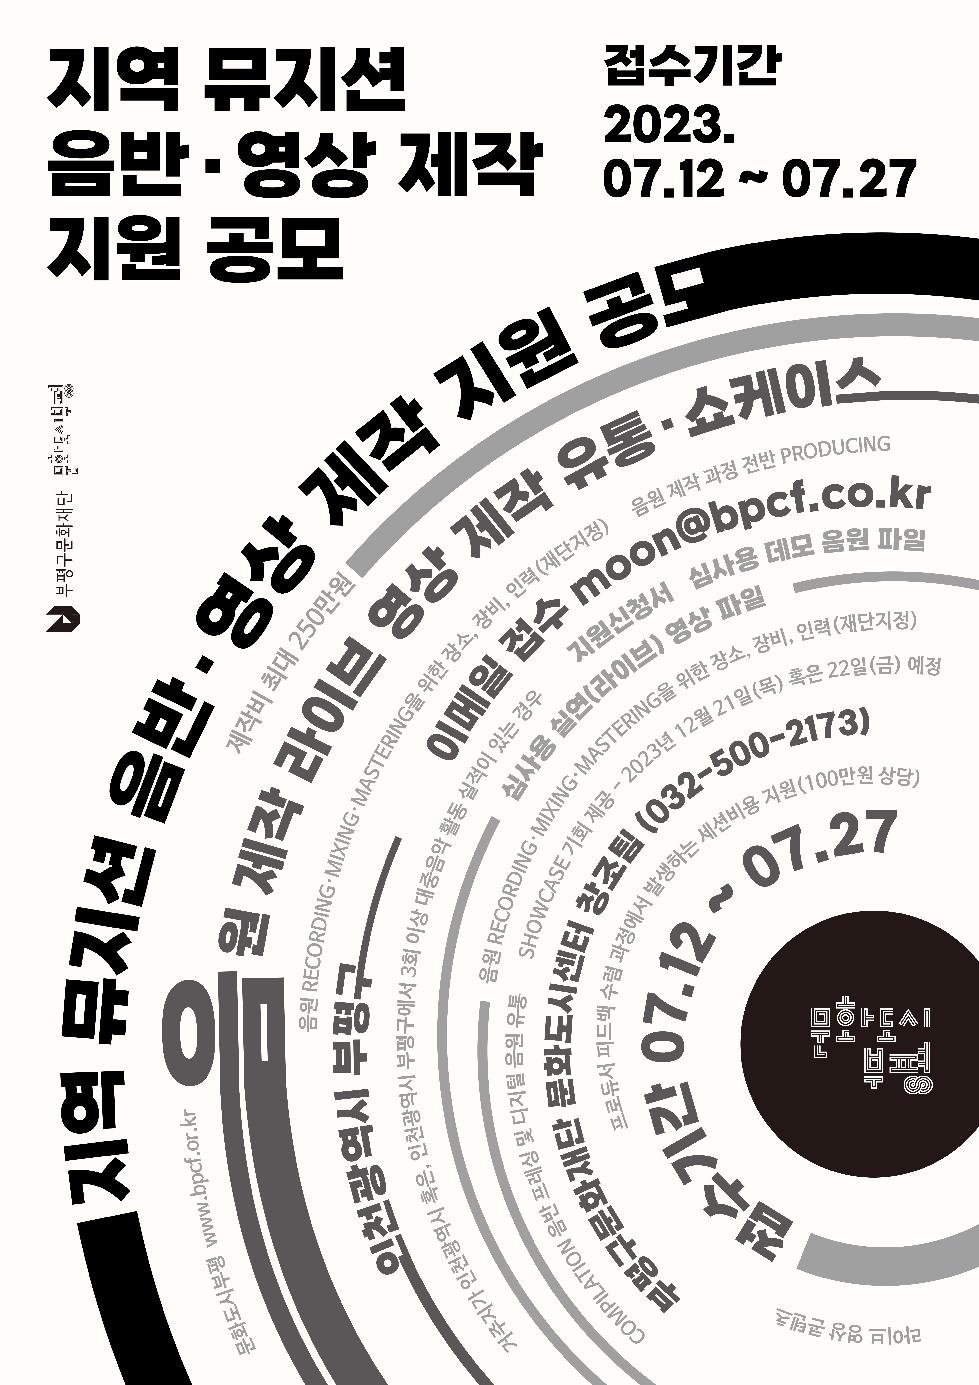 인천 부평구 문화도시부평, 지역 뮤지션 음반·영상 제작 지원 공모 진행